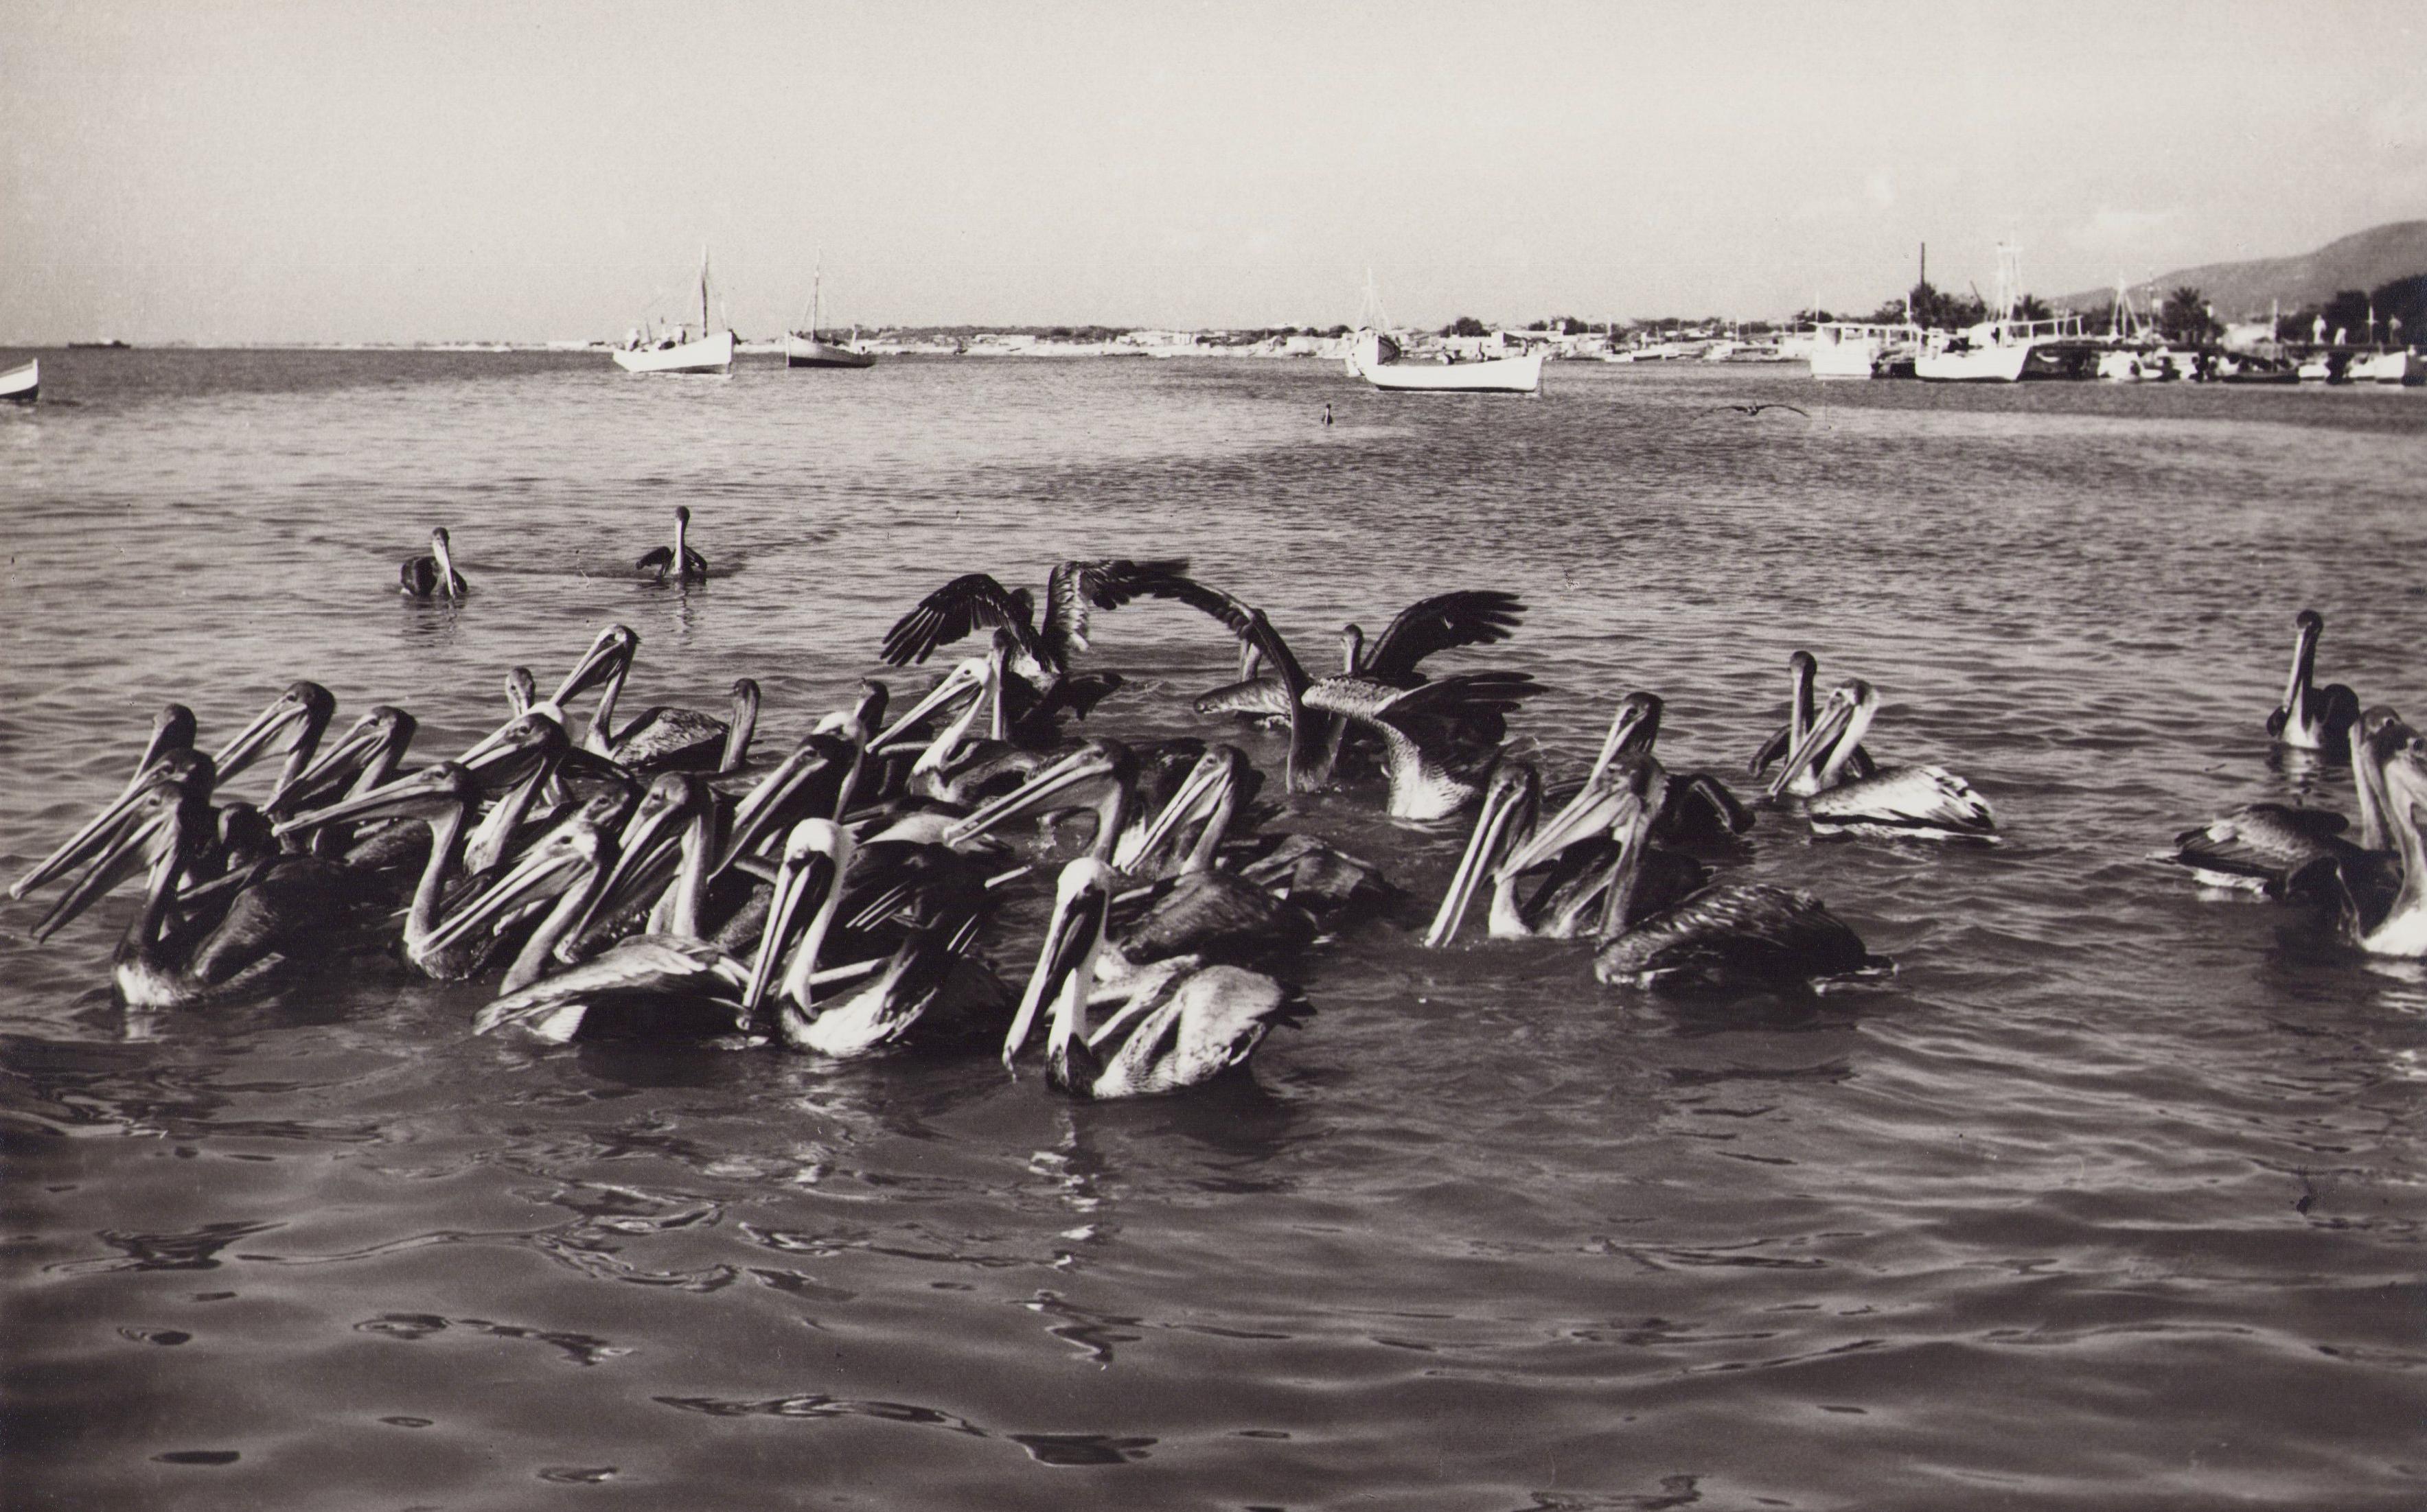 Hanna Seidel Portrait Photograph - Venezuela, Pelicans, Black and White Photography, 1960s, 19 x 30, 1 cm